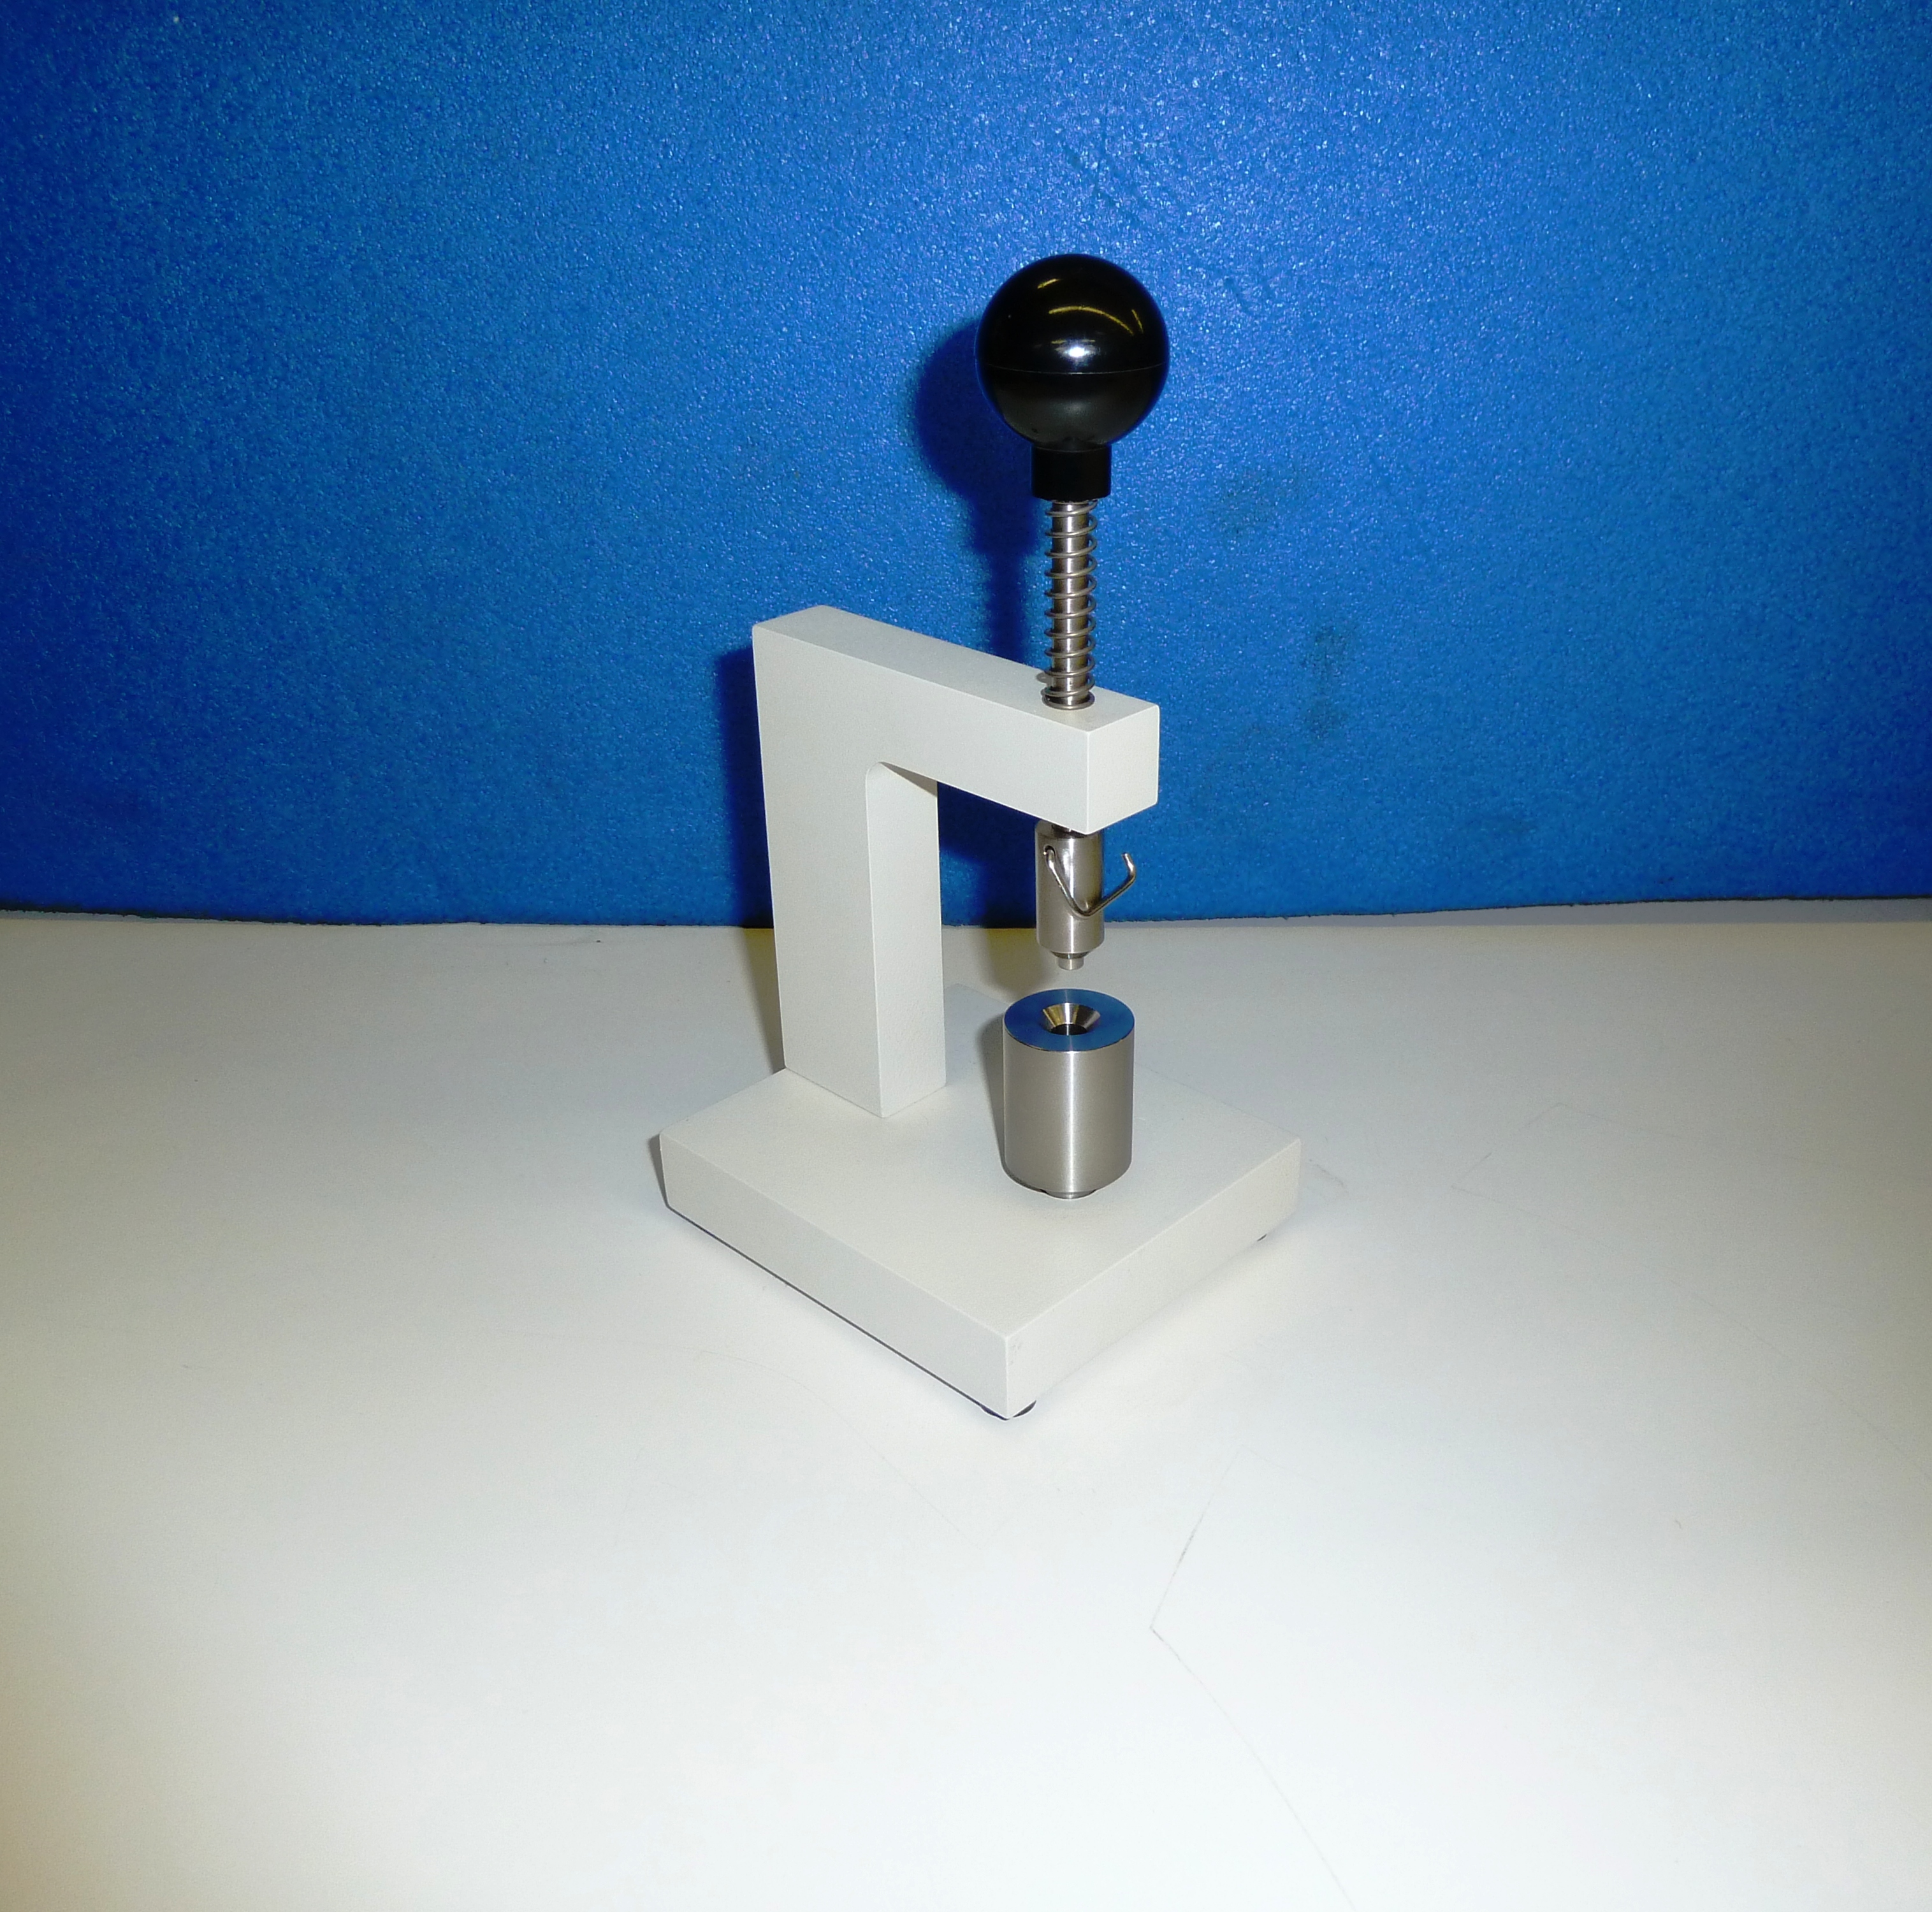 Calorimeter PLS-2 STANDARD SAMPLE PAN CRIMP PRESS